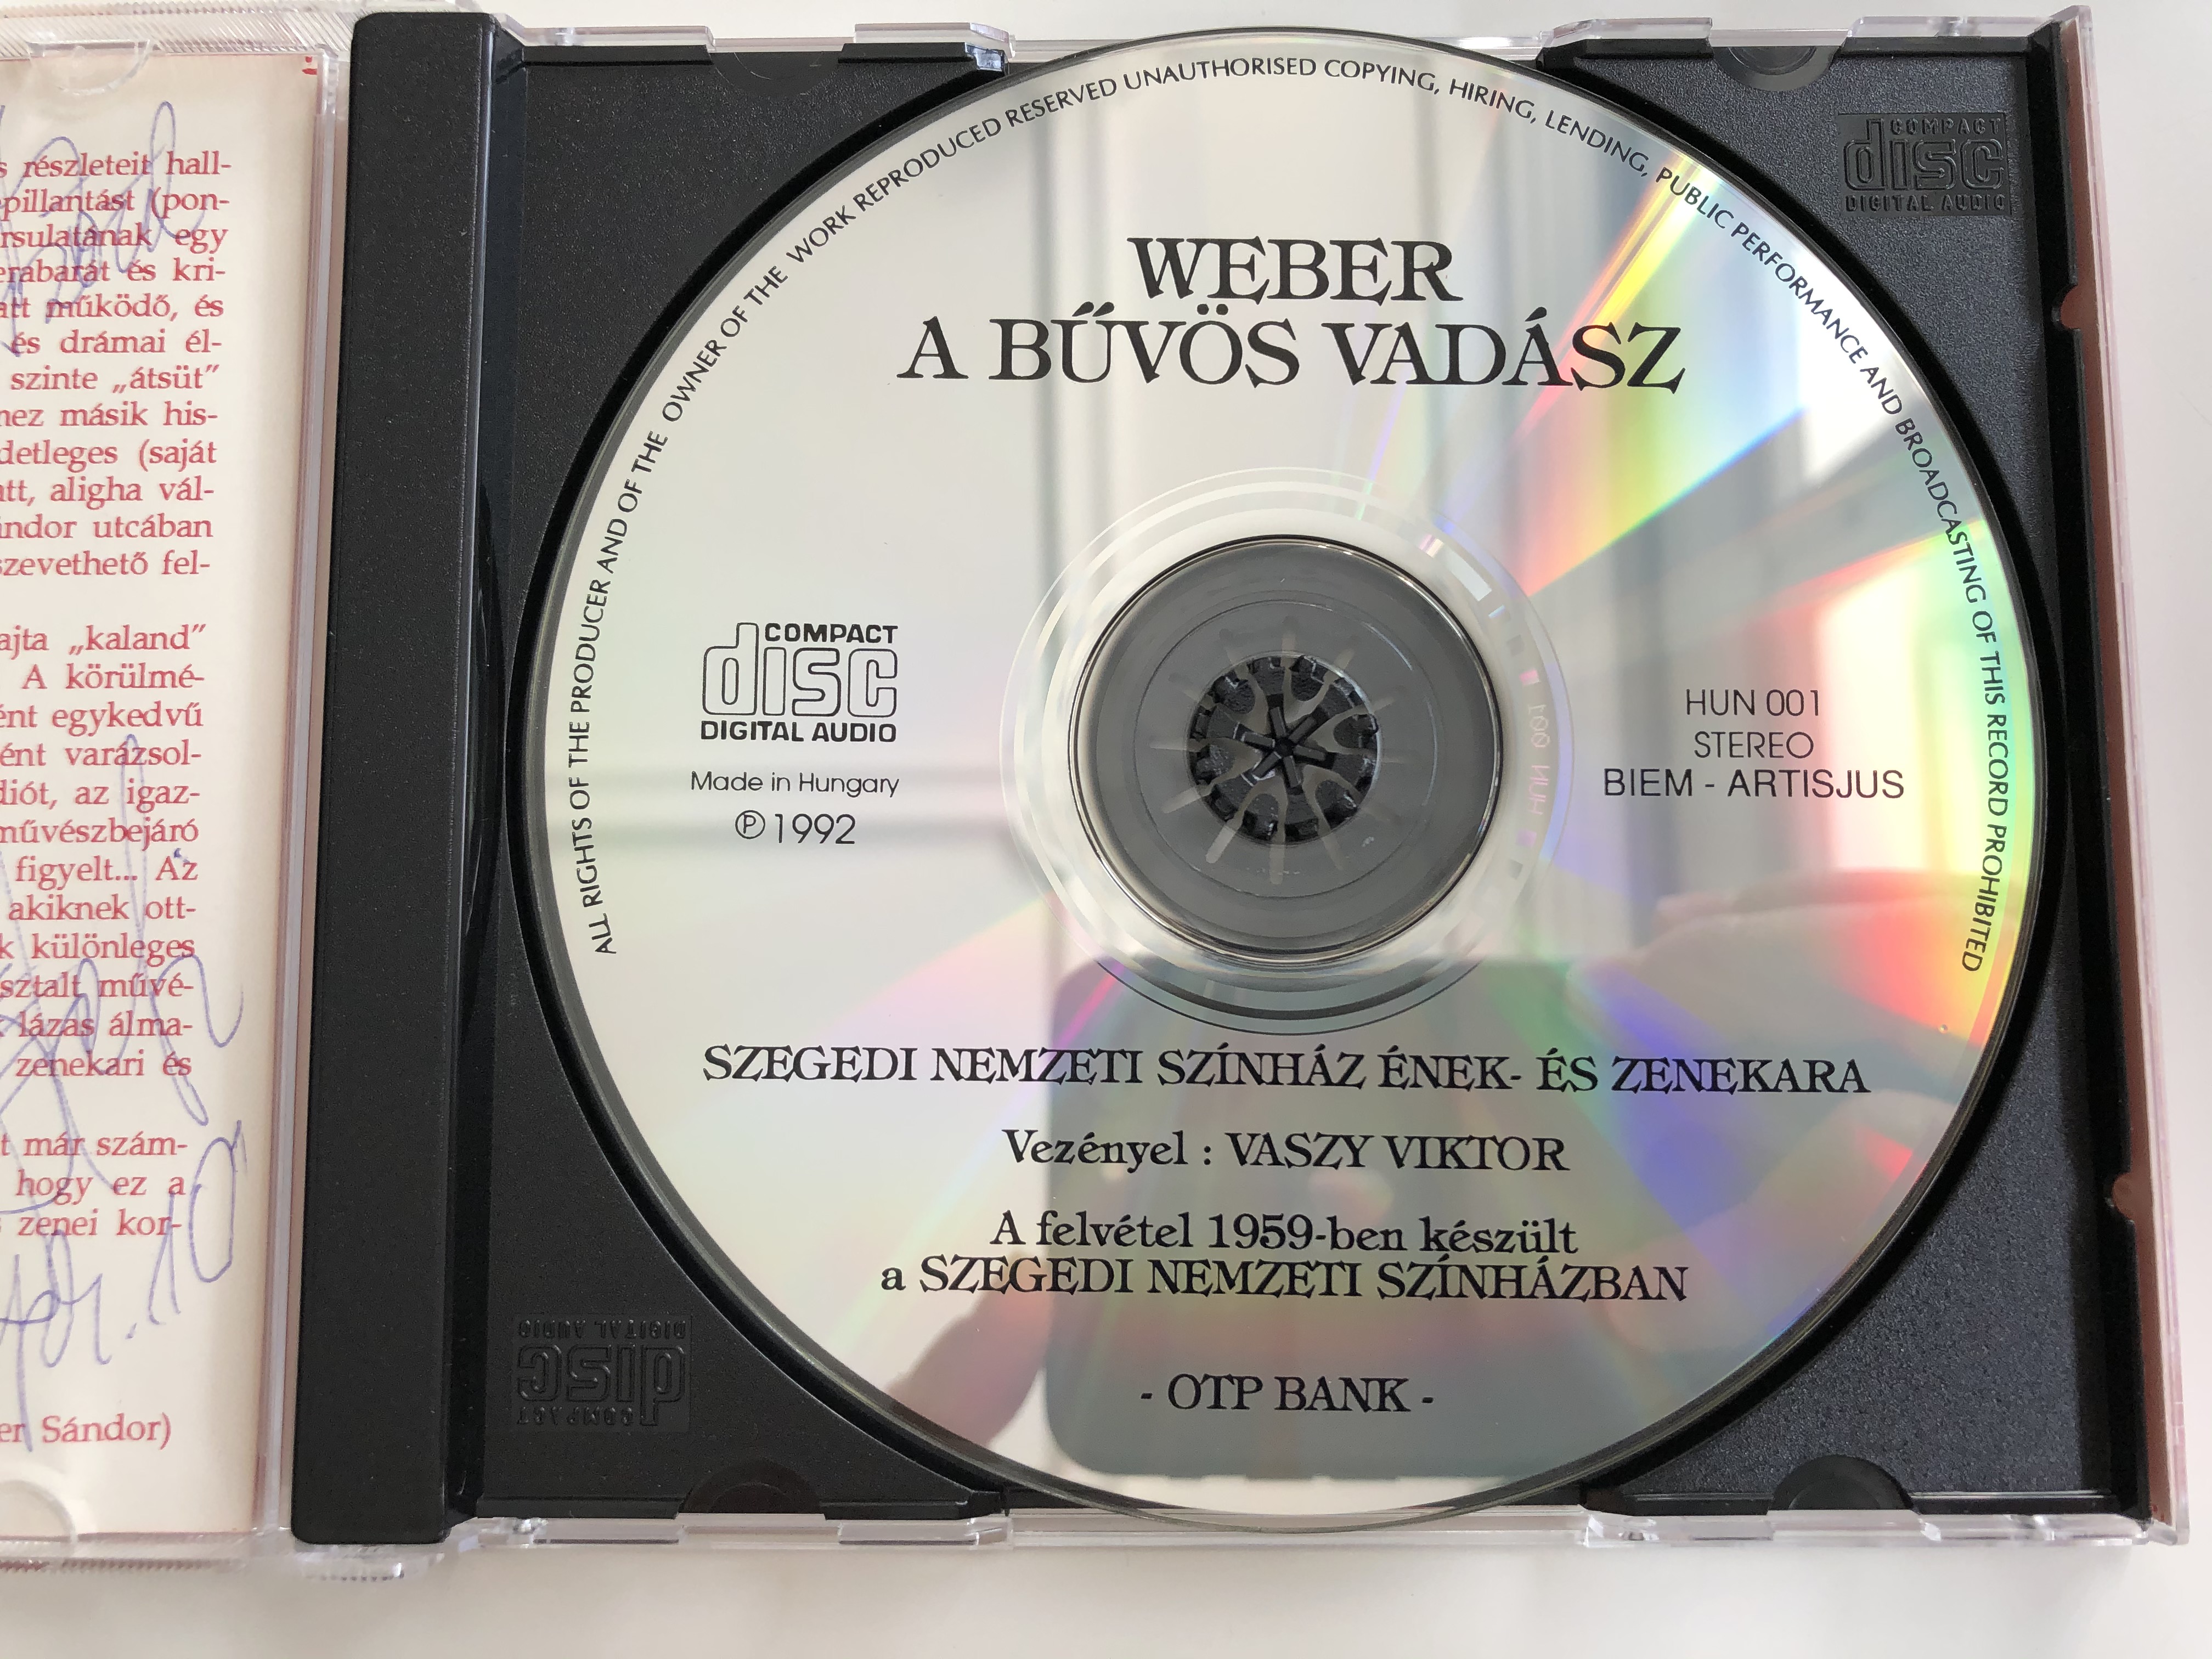 carl-maria-von-weber-a-buvos-vadasz-berdal-valeria-moldovan-stefania-megyesi-pal-szegedi-nemzeti-szinhaz-enek-es-zenekara-conducted-vaszy-viktori-otp-bank-audio-cd-1992-stereo-hun-001-3-.jpg